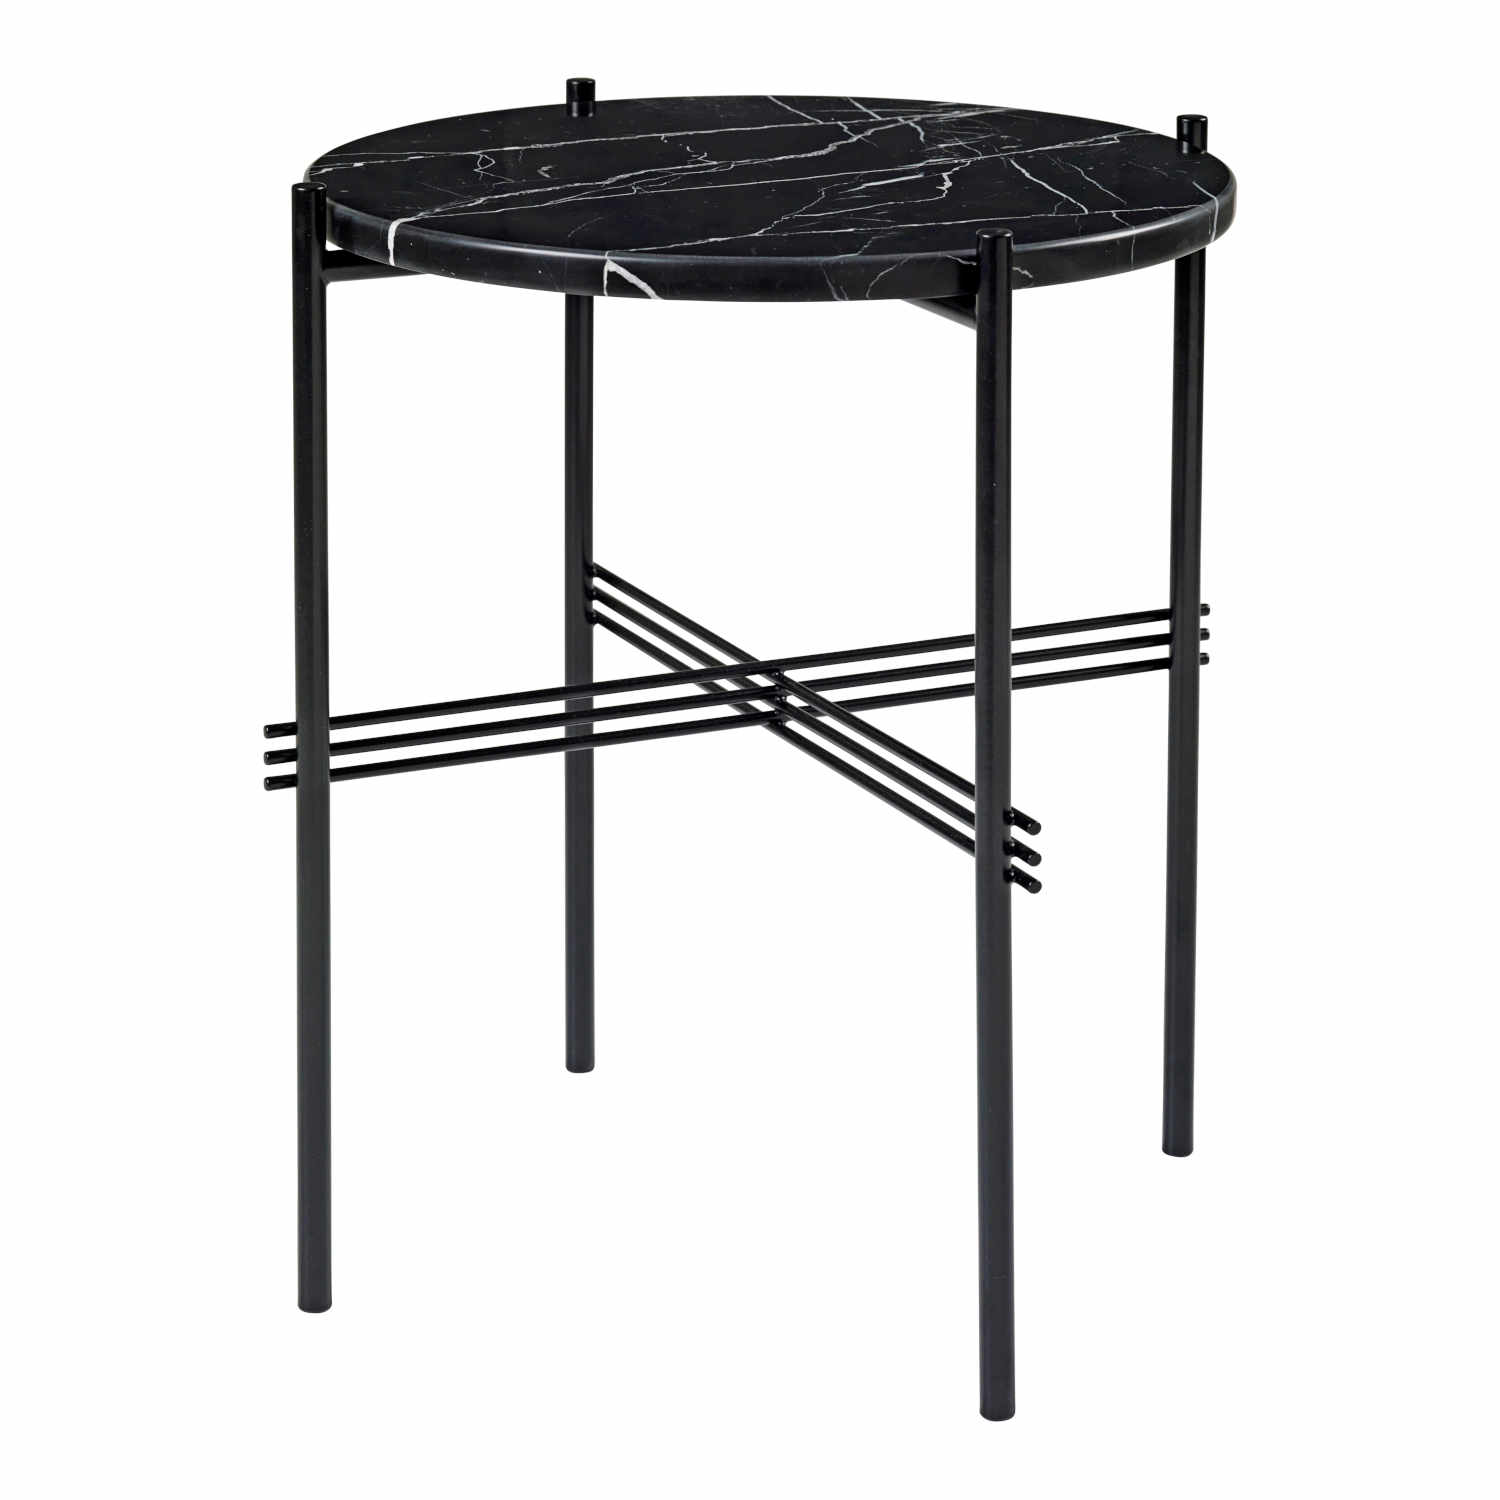 TS Side Table Beistelltisch, Tischplatte marmor, grey emperador, Untergestell stahl, black von GUBI